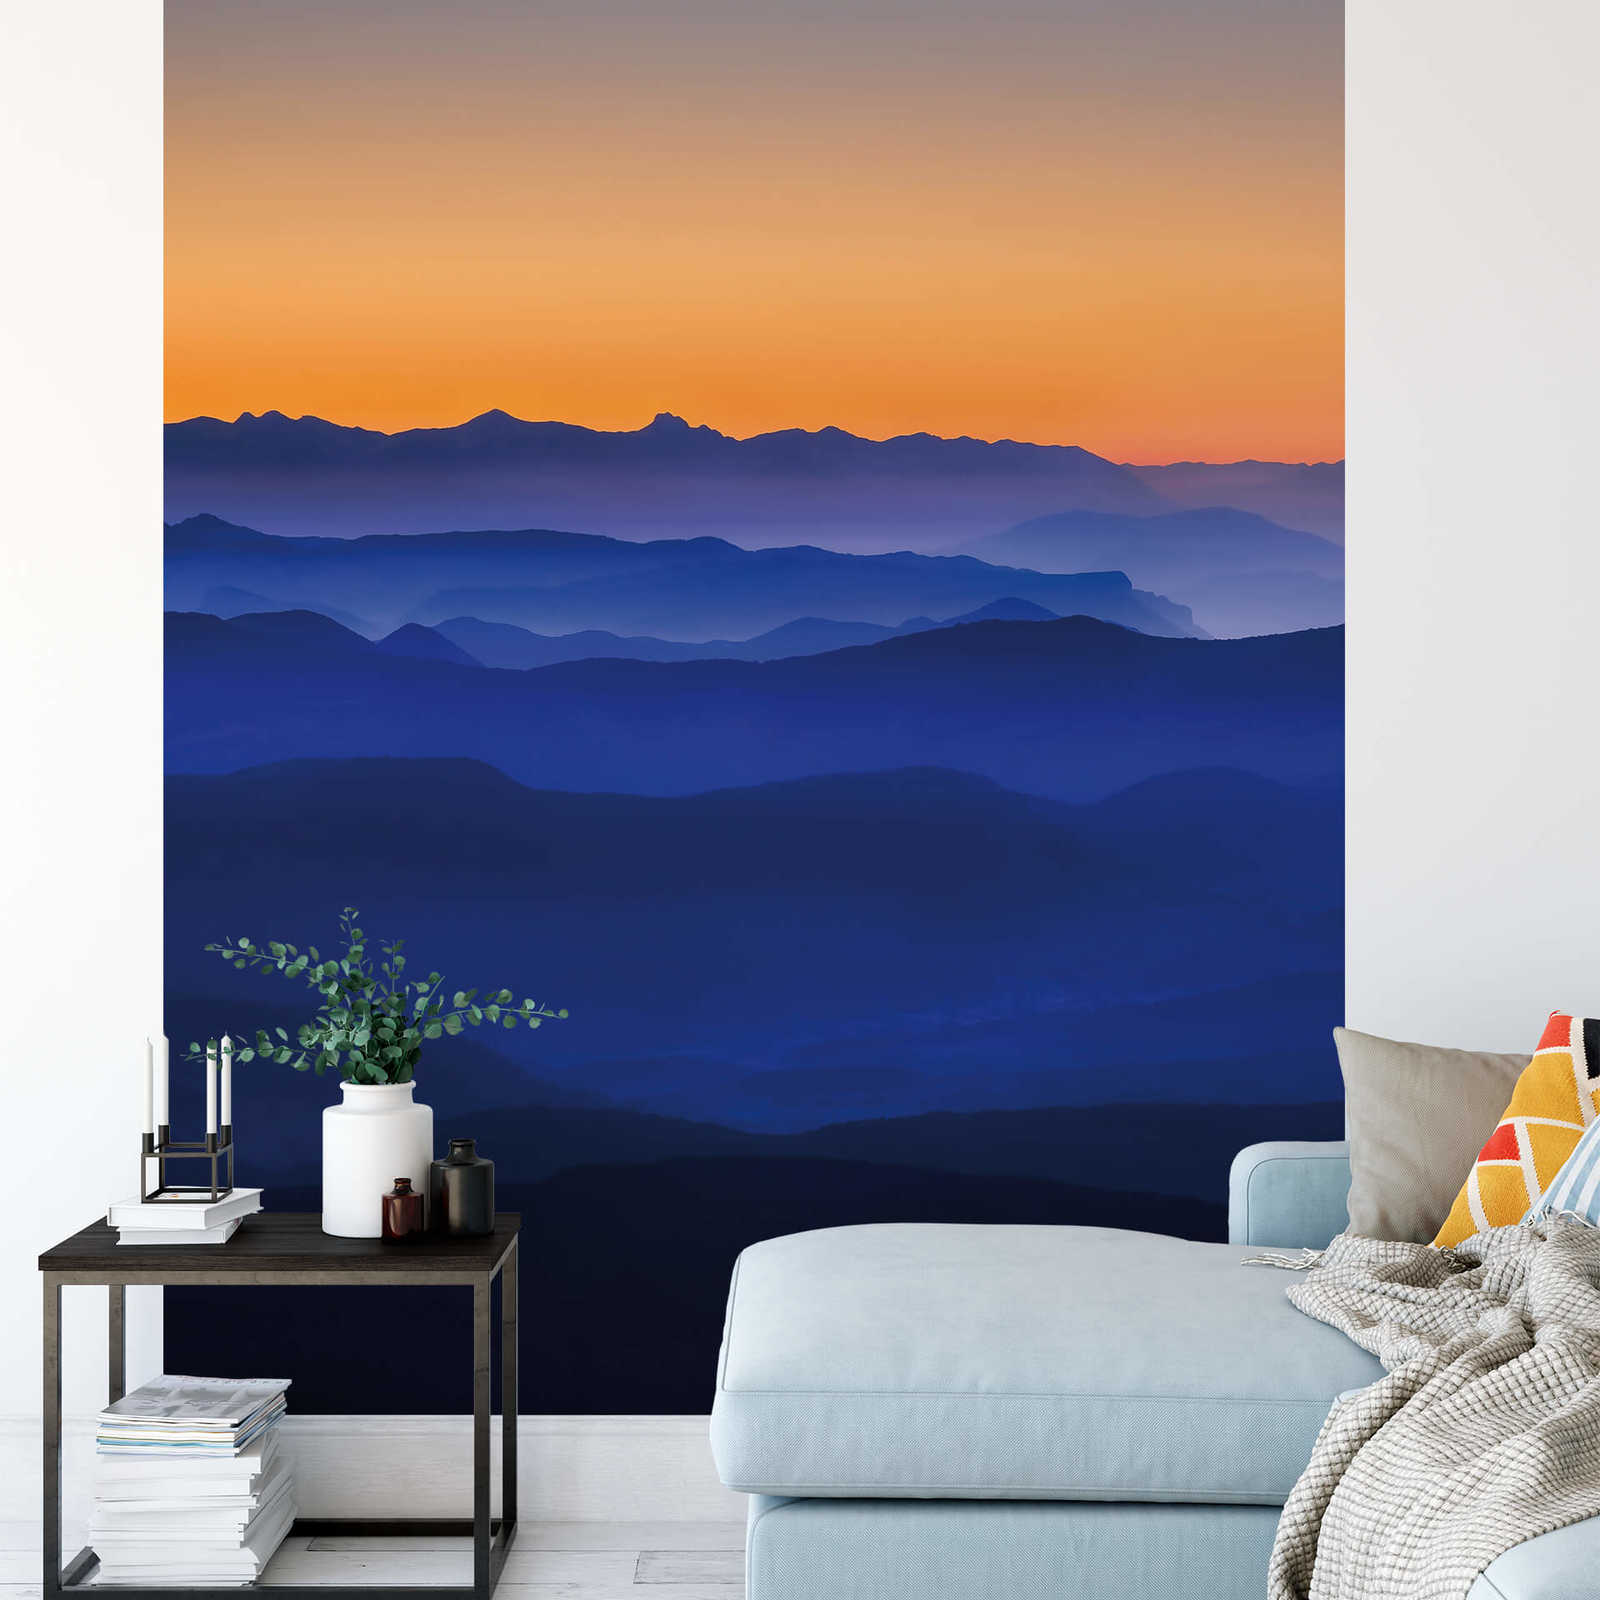             Papel pintado Montañas al atardecer - Azul, naranja, amarillo
        